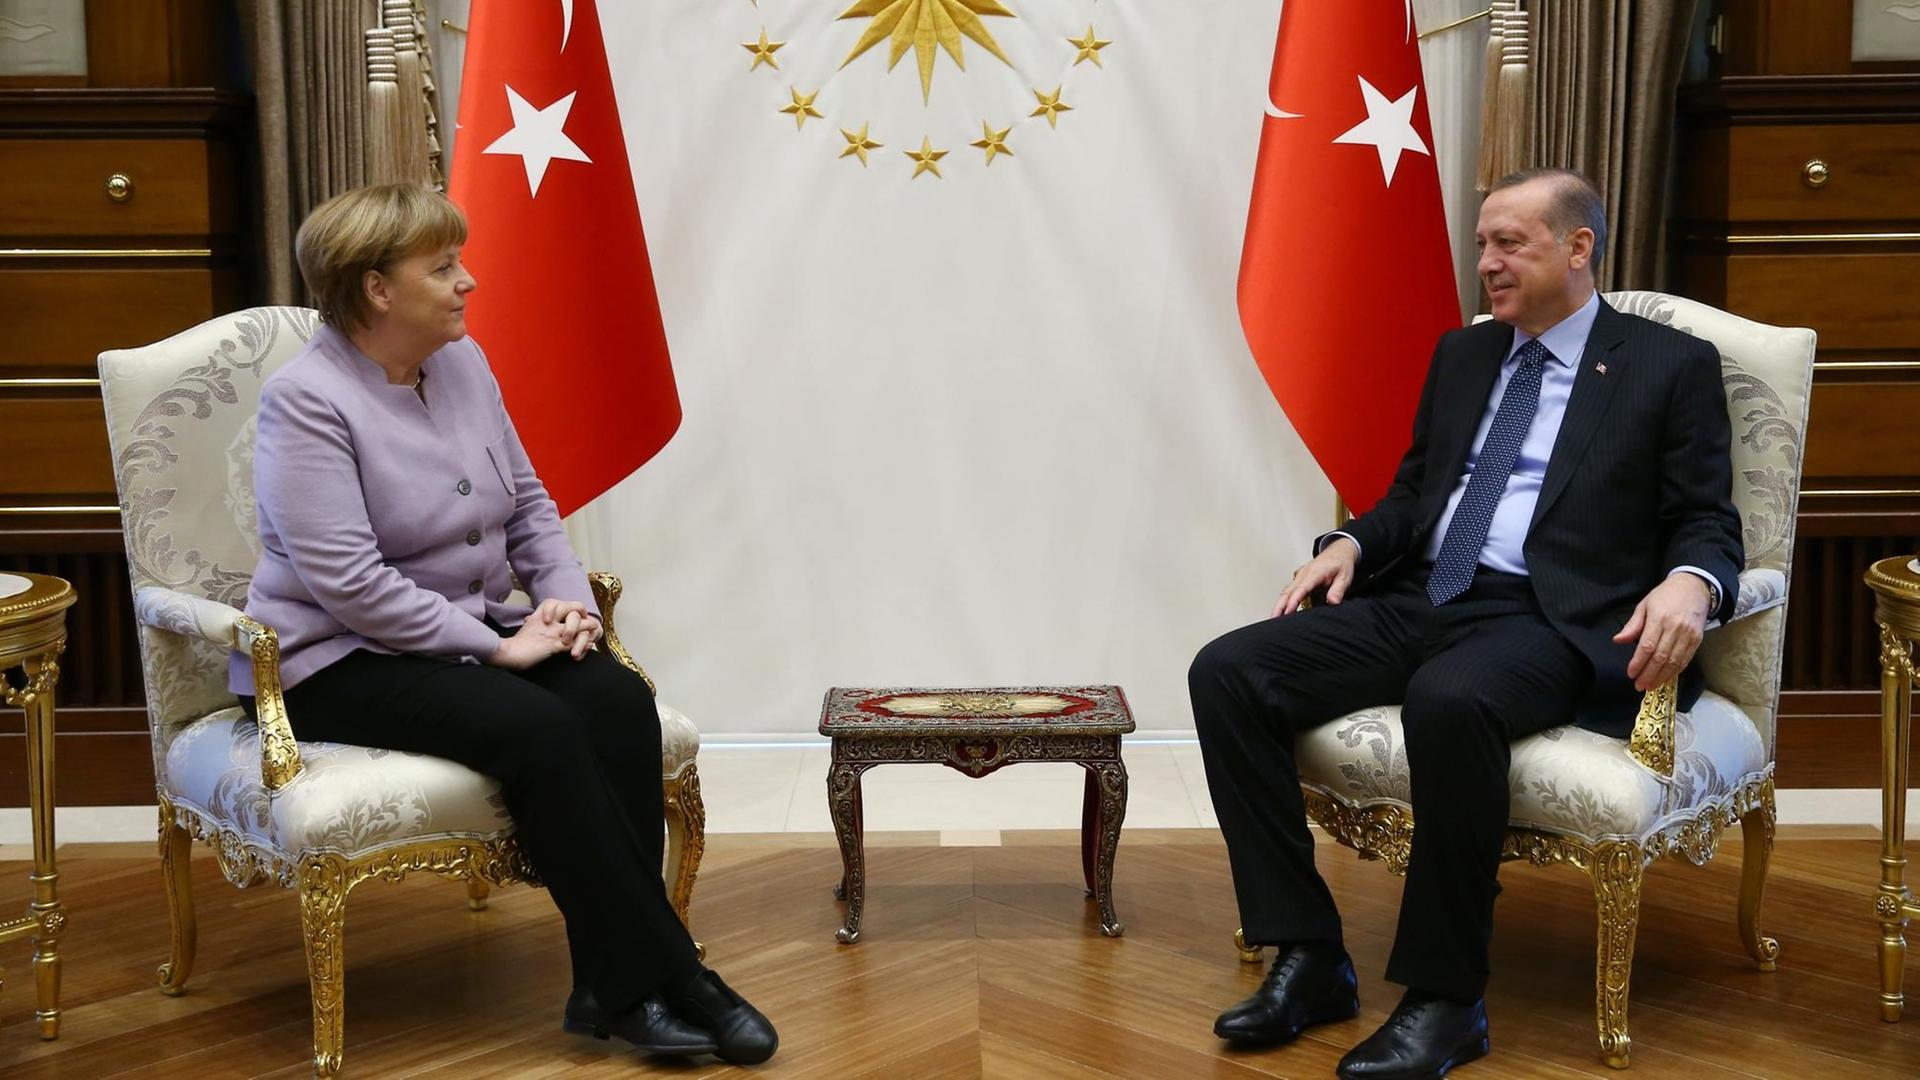 Die beiden sitzen sich in Stühlen gegenüber und lächeln, dahinter stehen zwei türkische Fahnen.